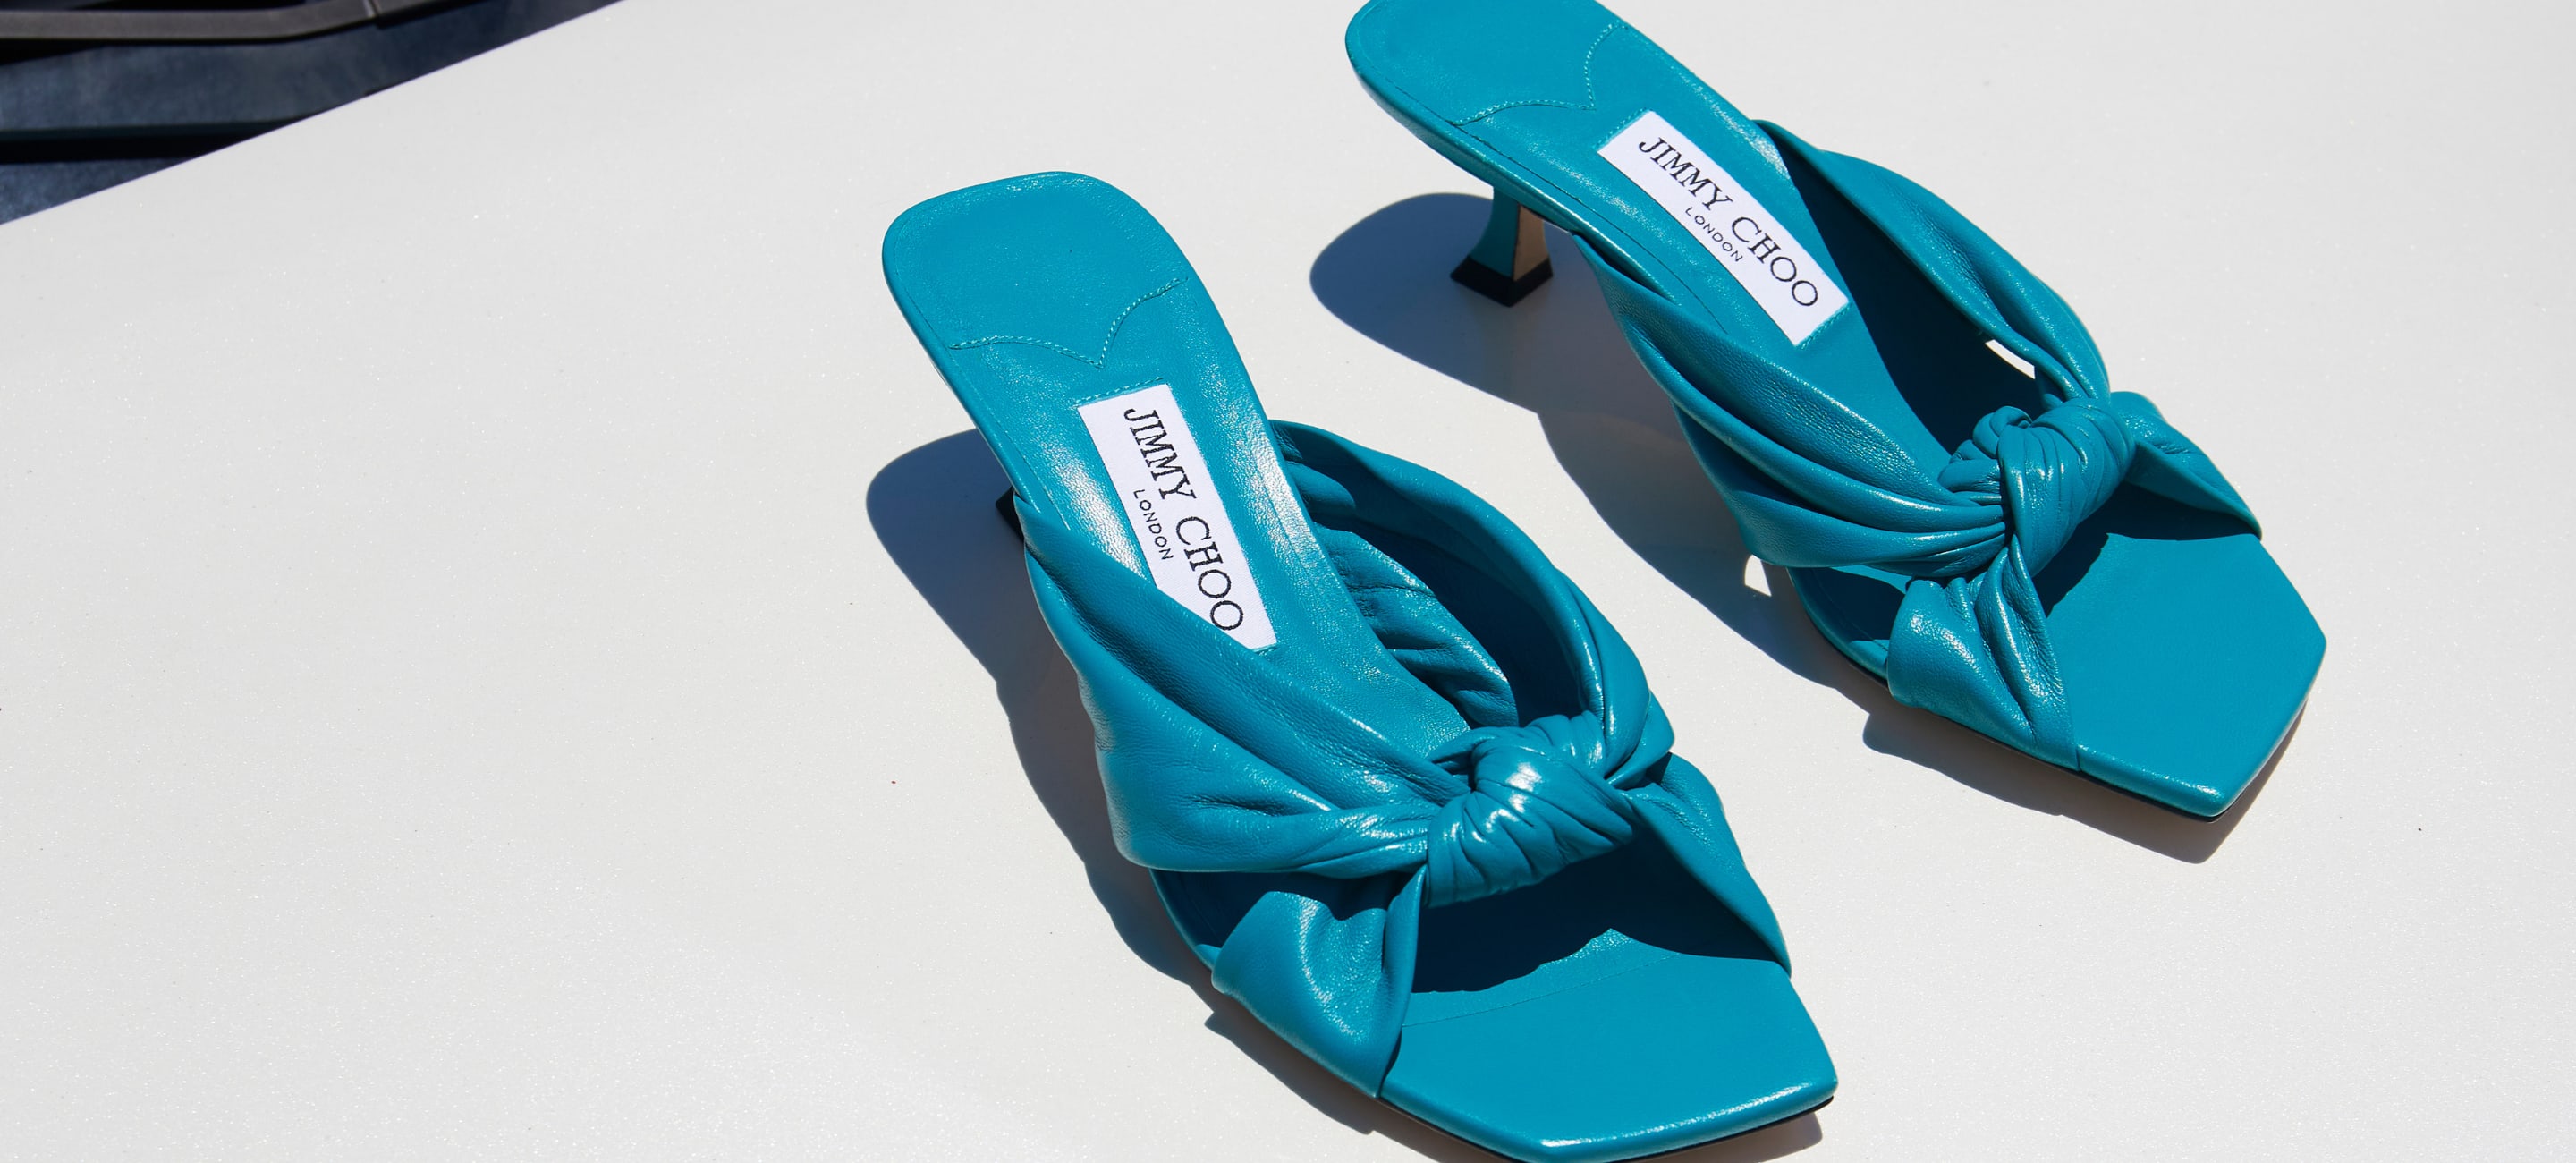 Designer Slipper Cosy Flat Sandals Calfskin Mules Clogs Denim